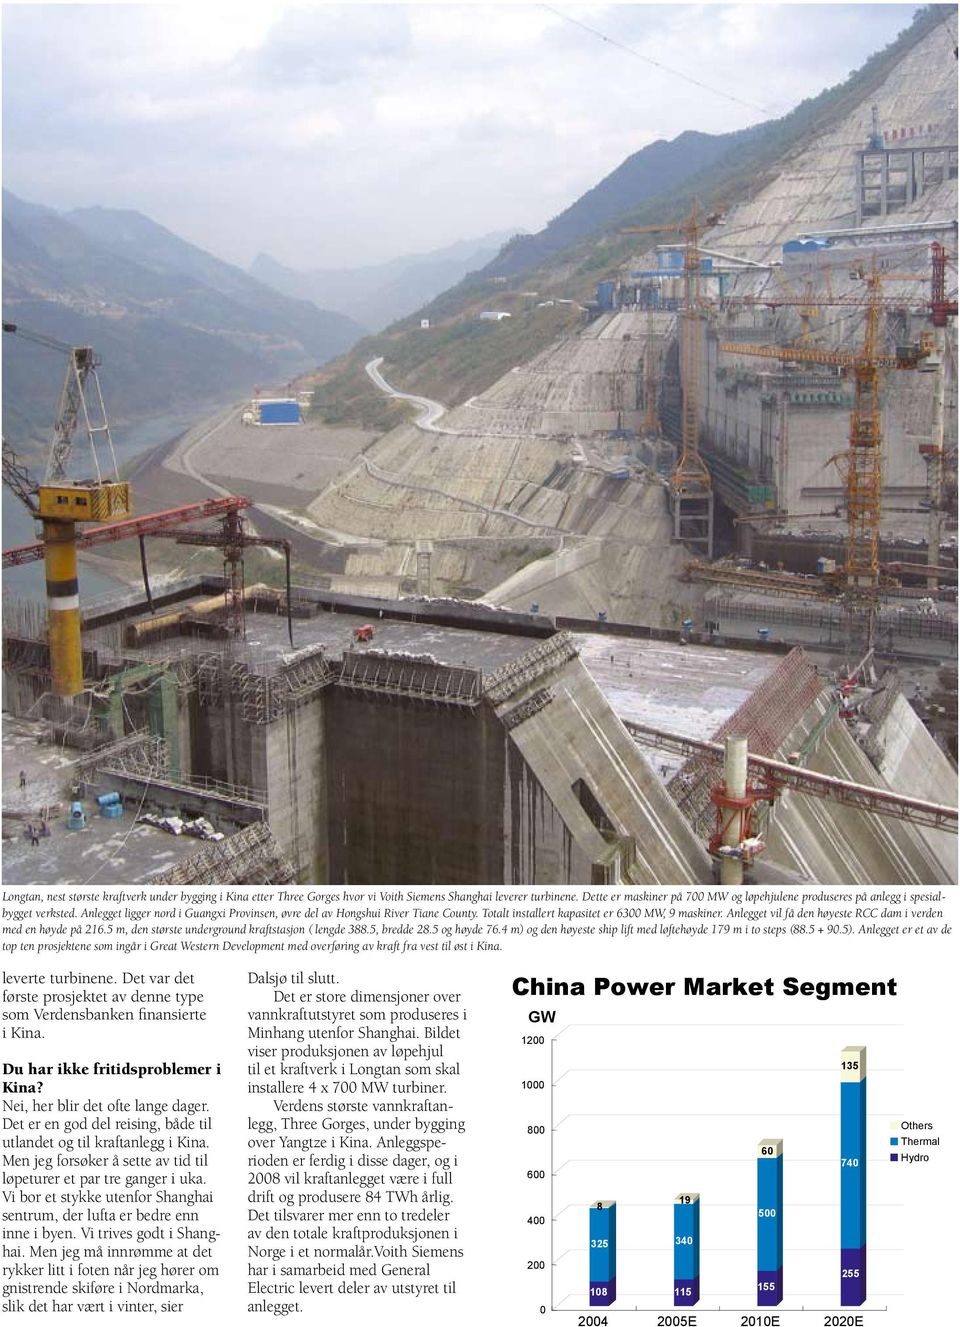 Totalt installert kapasitet er 6300 MW, 9 maskiner. Anlegget vil få den høyeste RCC dam i verden med en høyde på 216.5 m, den største underground kraftstasjon ( lengde 388.5, bredde 28.5 og høyde 76.